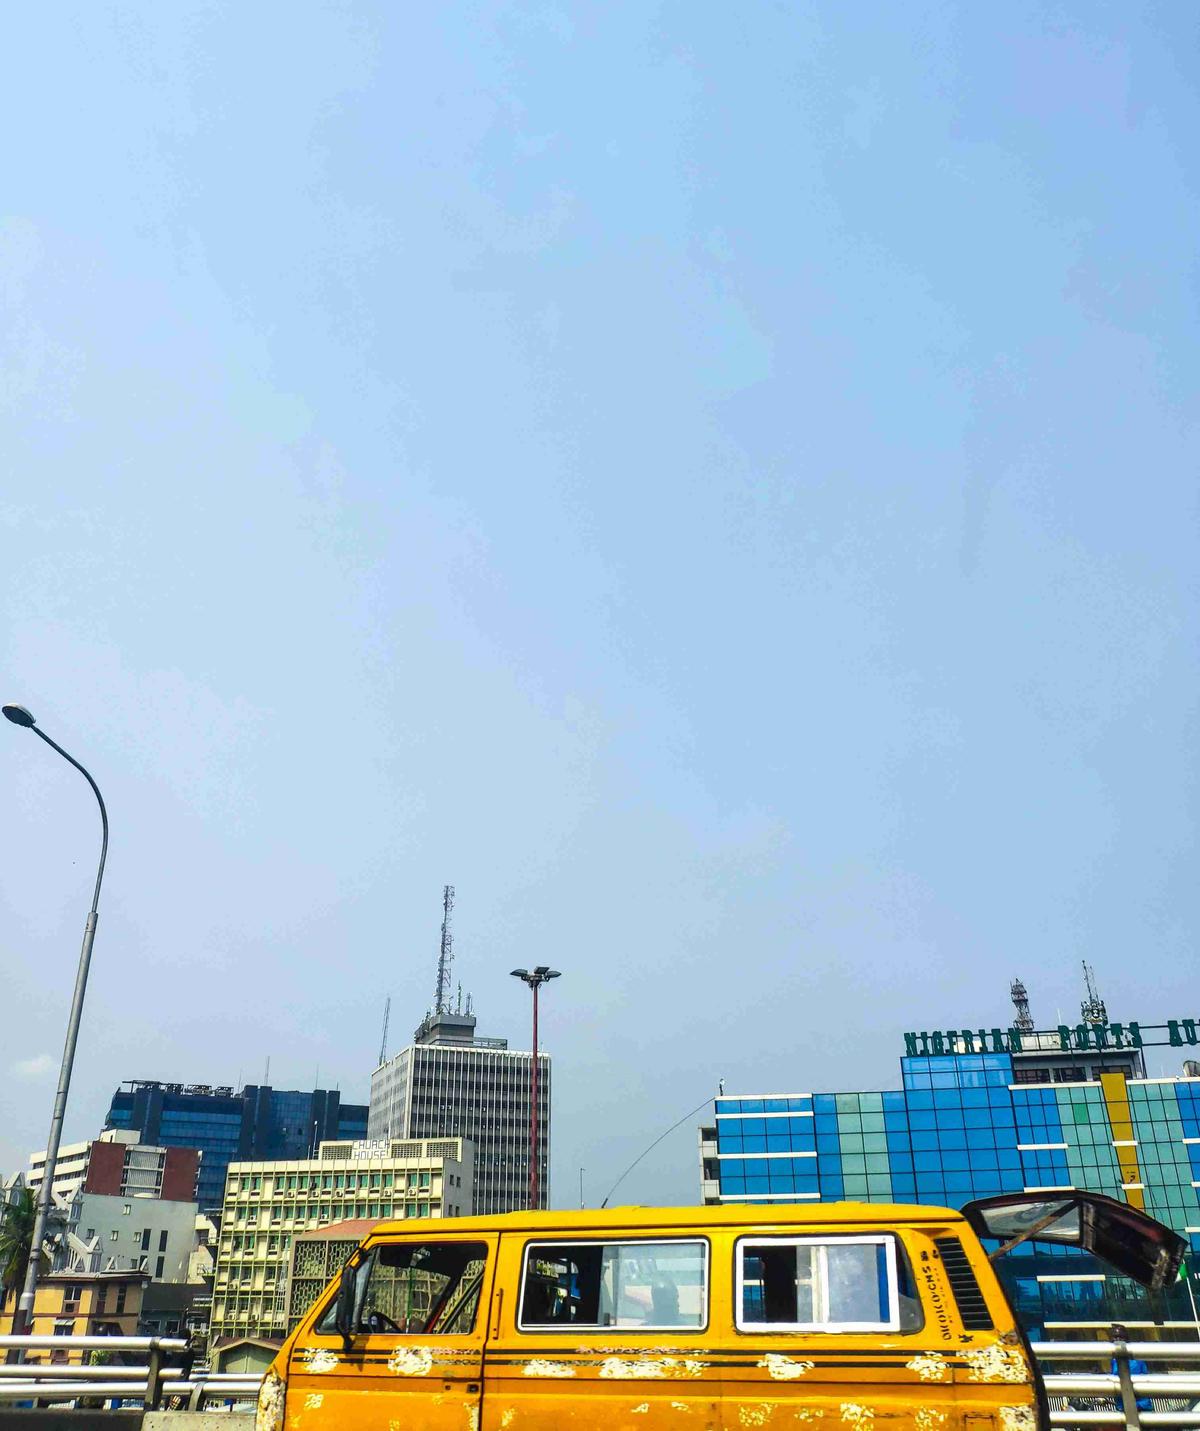 Gelber Bus im urbanen Stadtbild mit modernen Gebäuden vor klarem Himmel